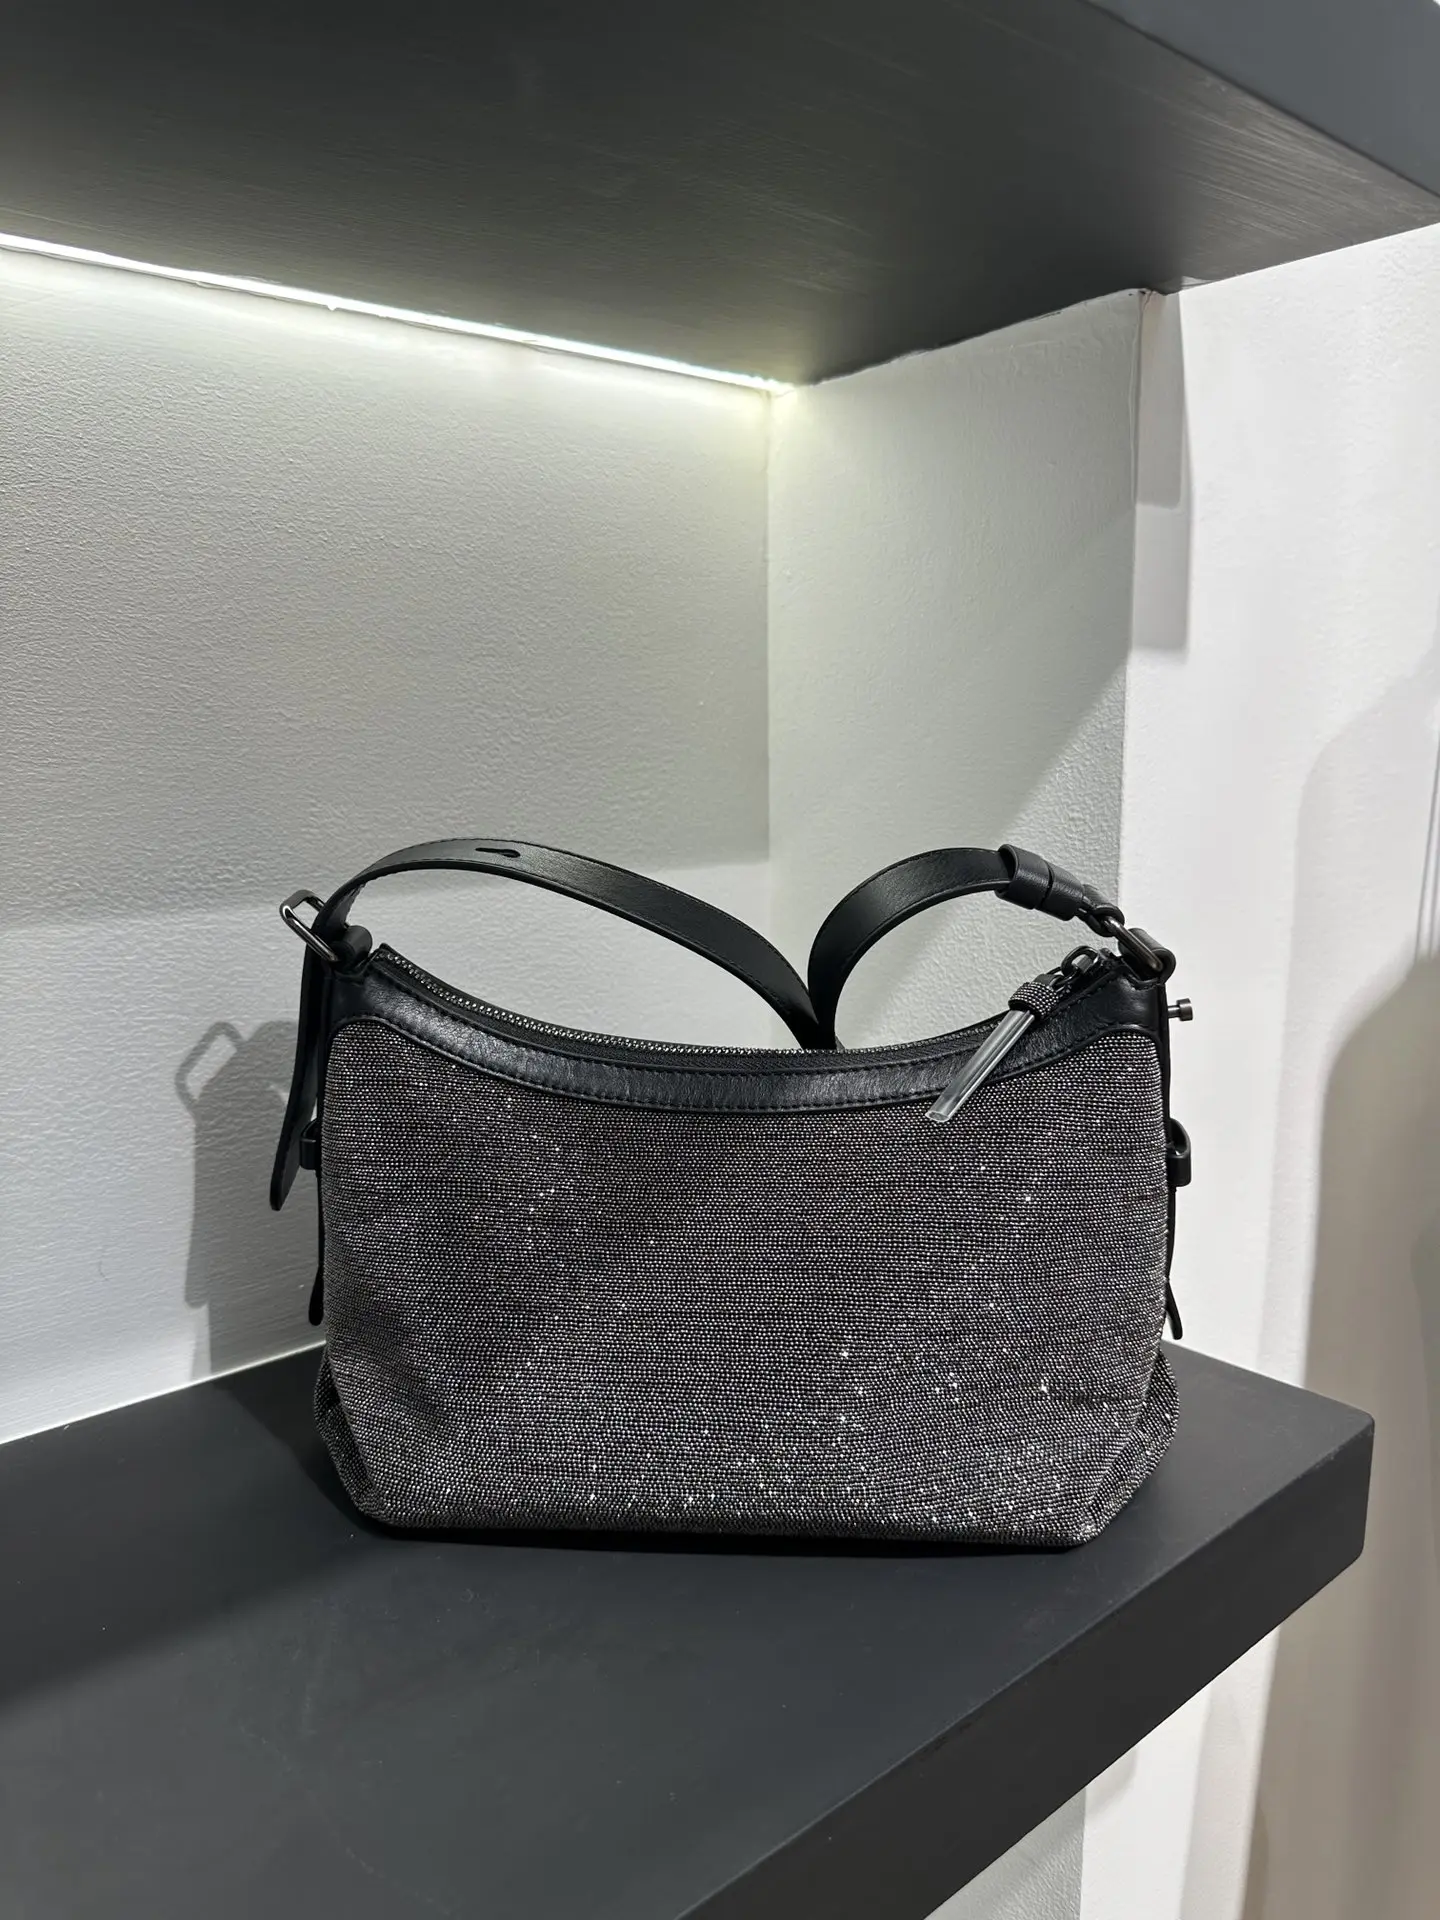 

Женская сумка через плечо с цепочкой из бисера, мягкая кожаная сумочка для подмышек, блестящая металлическая стильная сумка из натуральной кожи